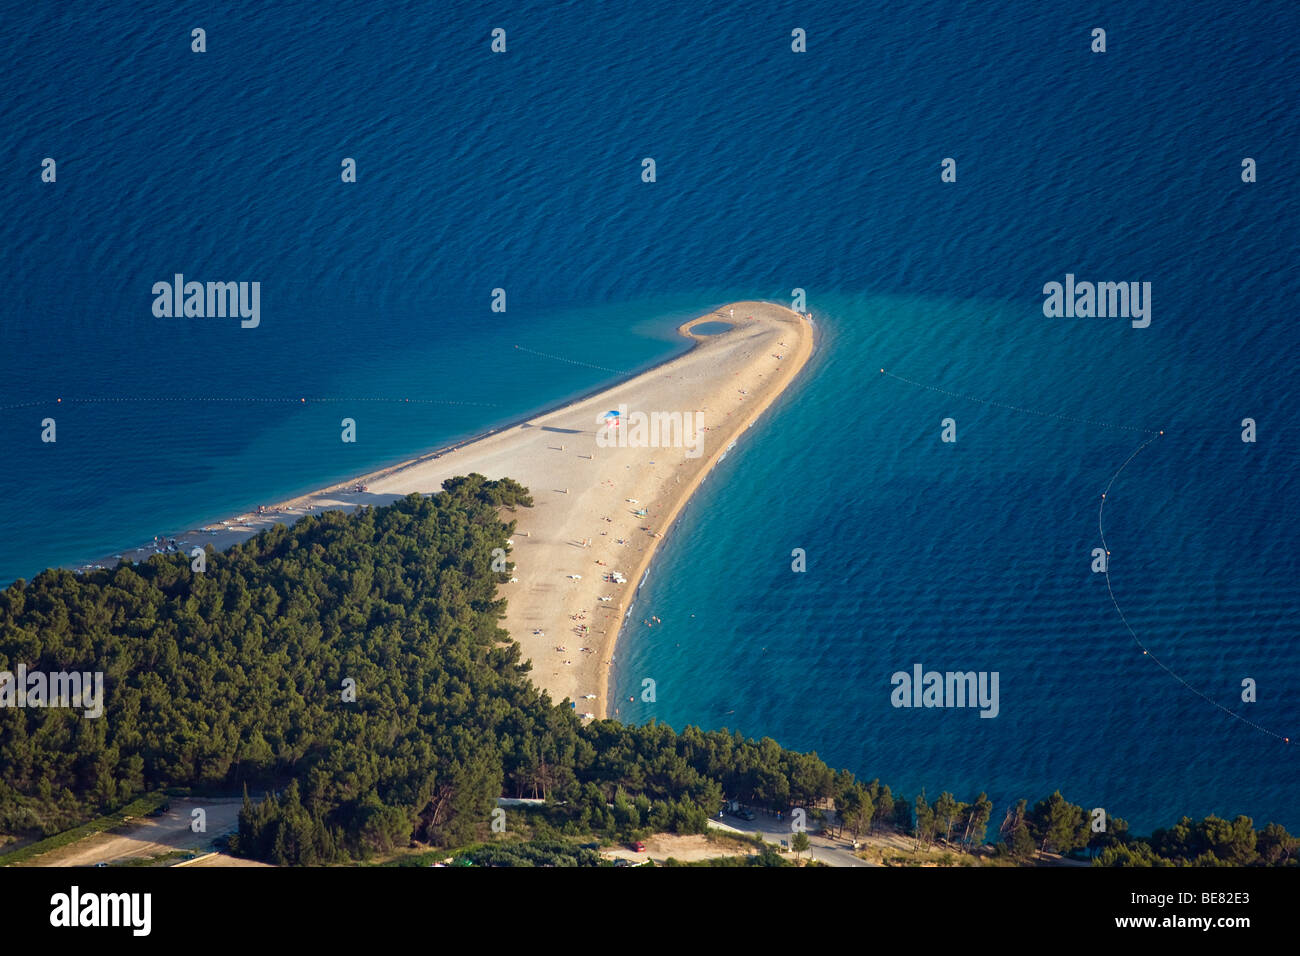 Languet e oceano nella luce del sole, Golden Horn, Bol, Isola di Brac, Dalmazia, Croazia, Europa Foto Stock